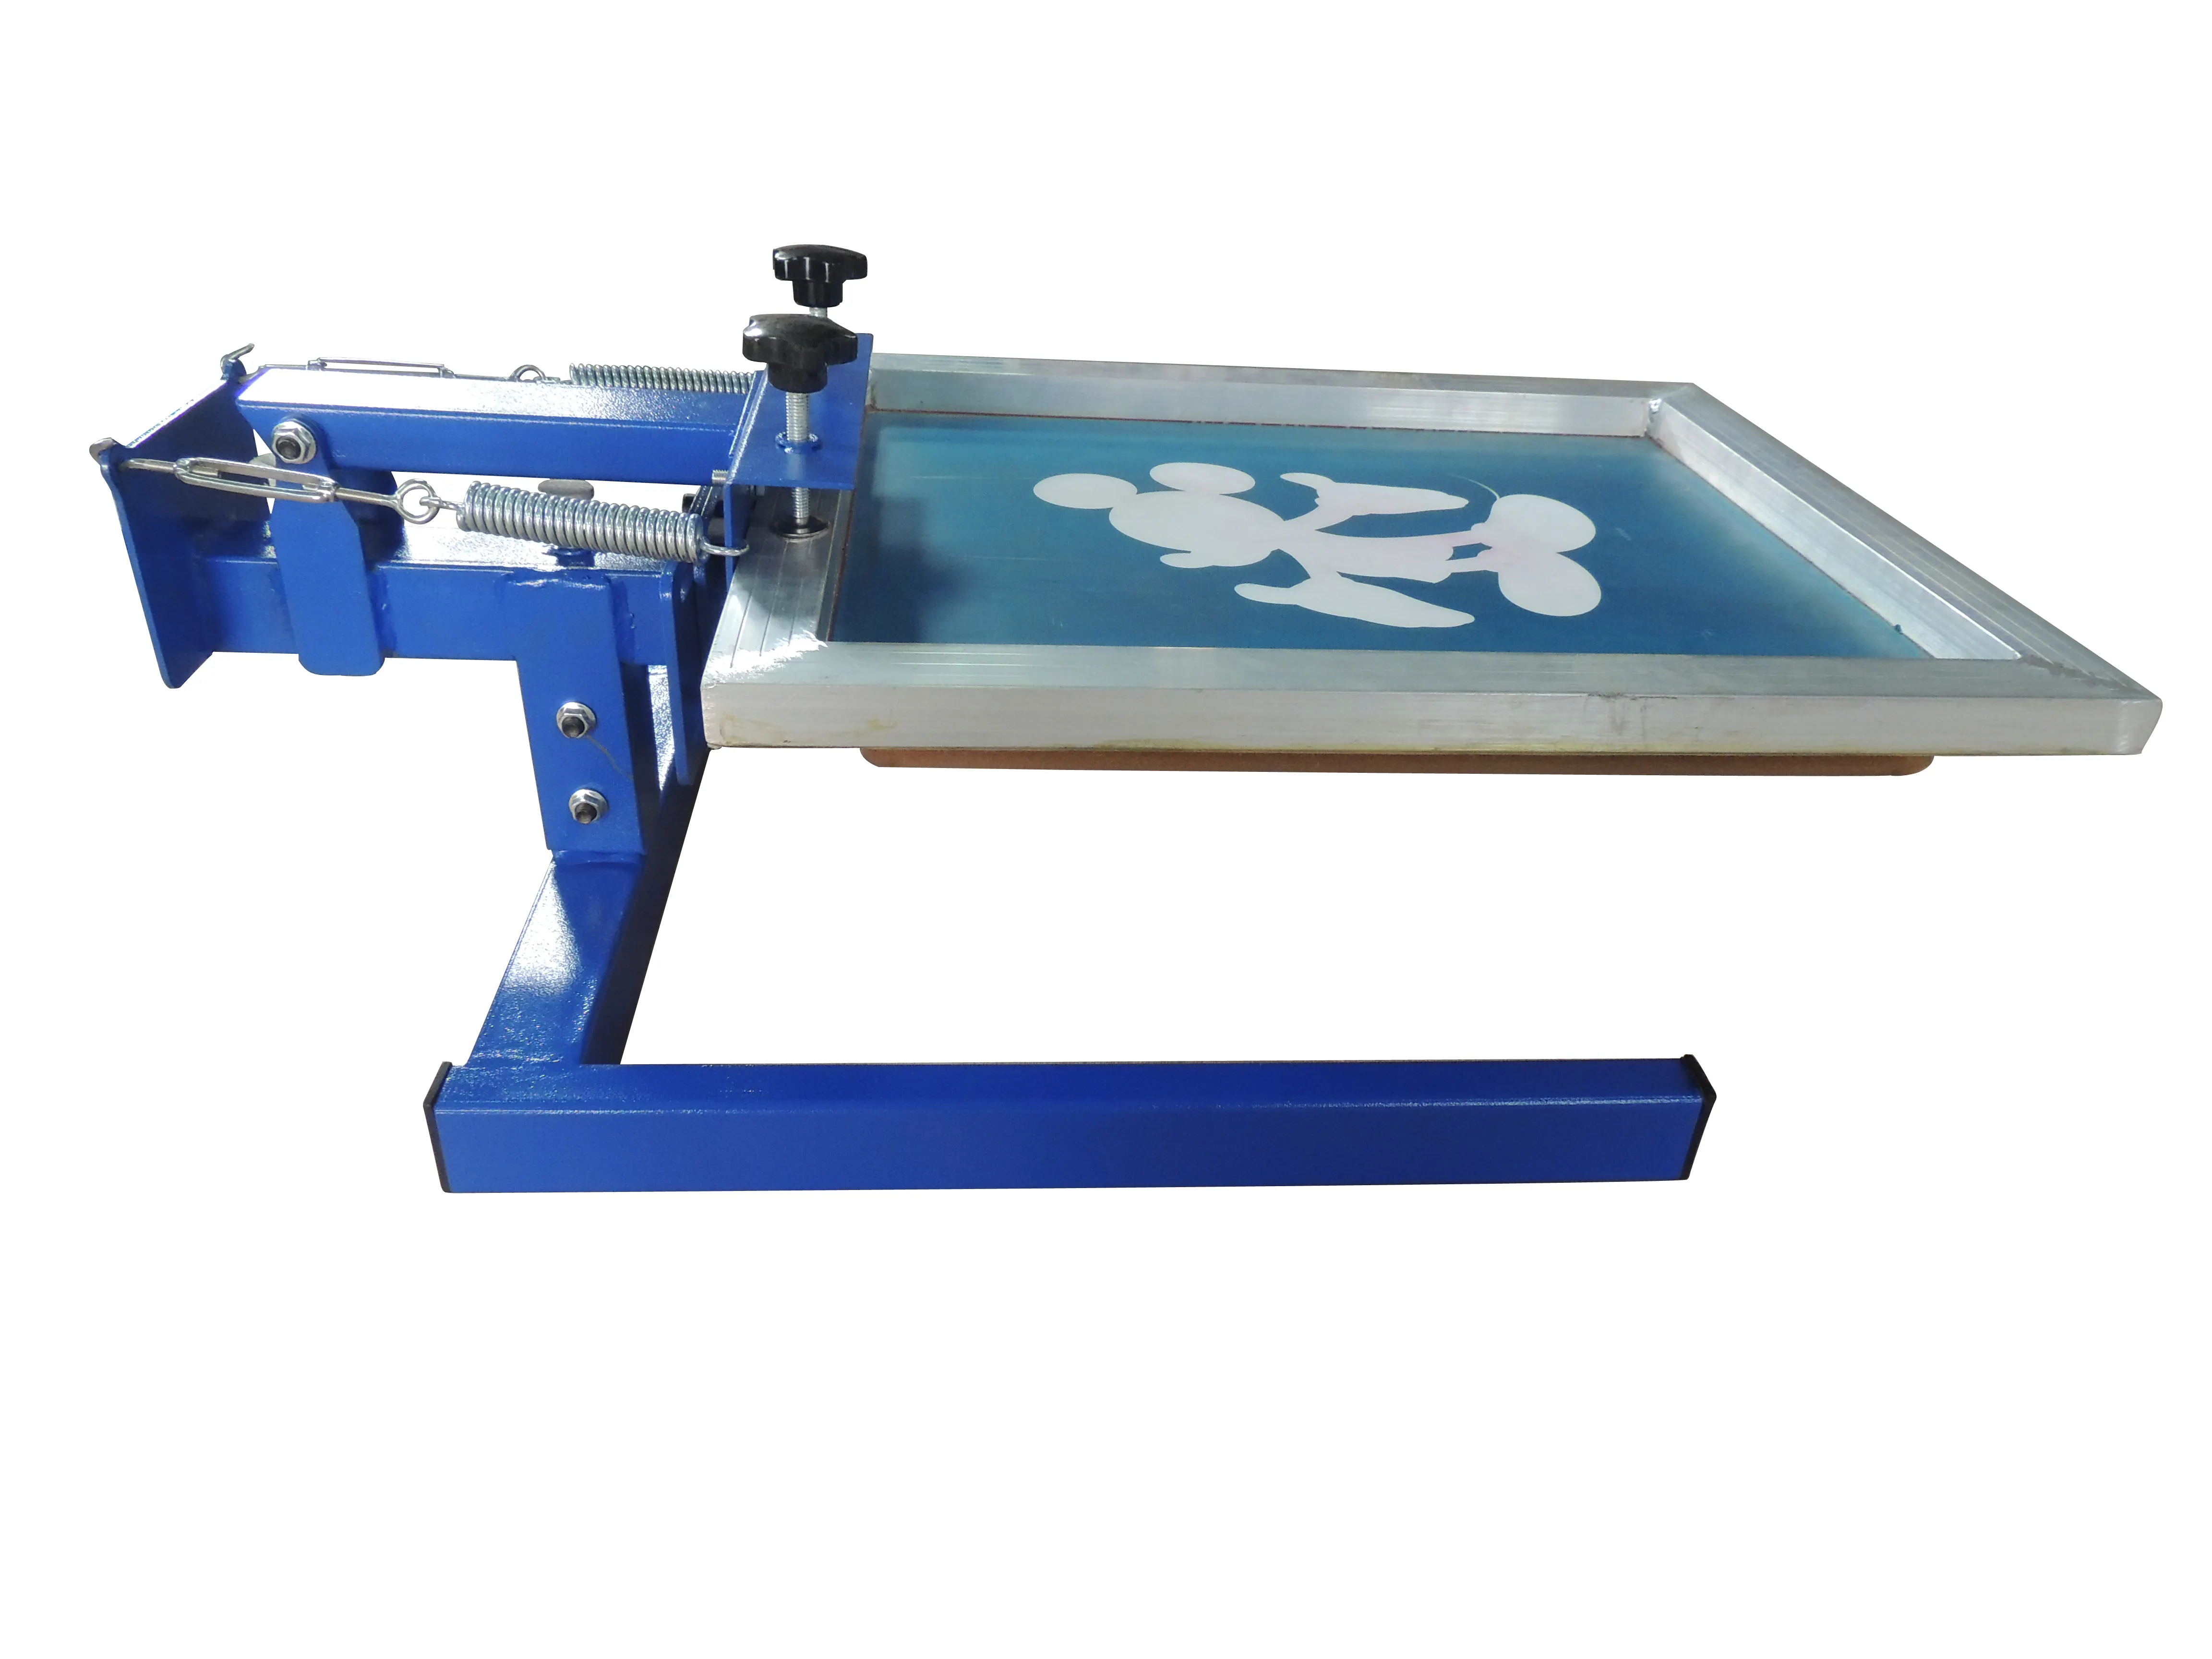 Impressora manual de tela, simples 1 cor 1 estação manual impressora da tela diy superfície plana direta camiseta roupas máquina de impressão